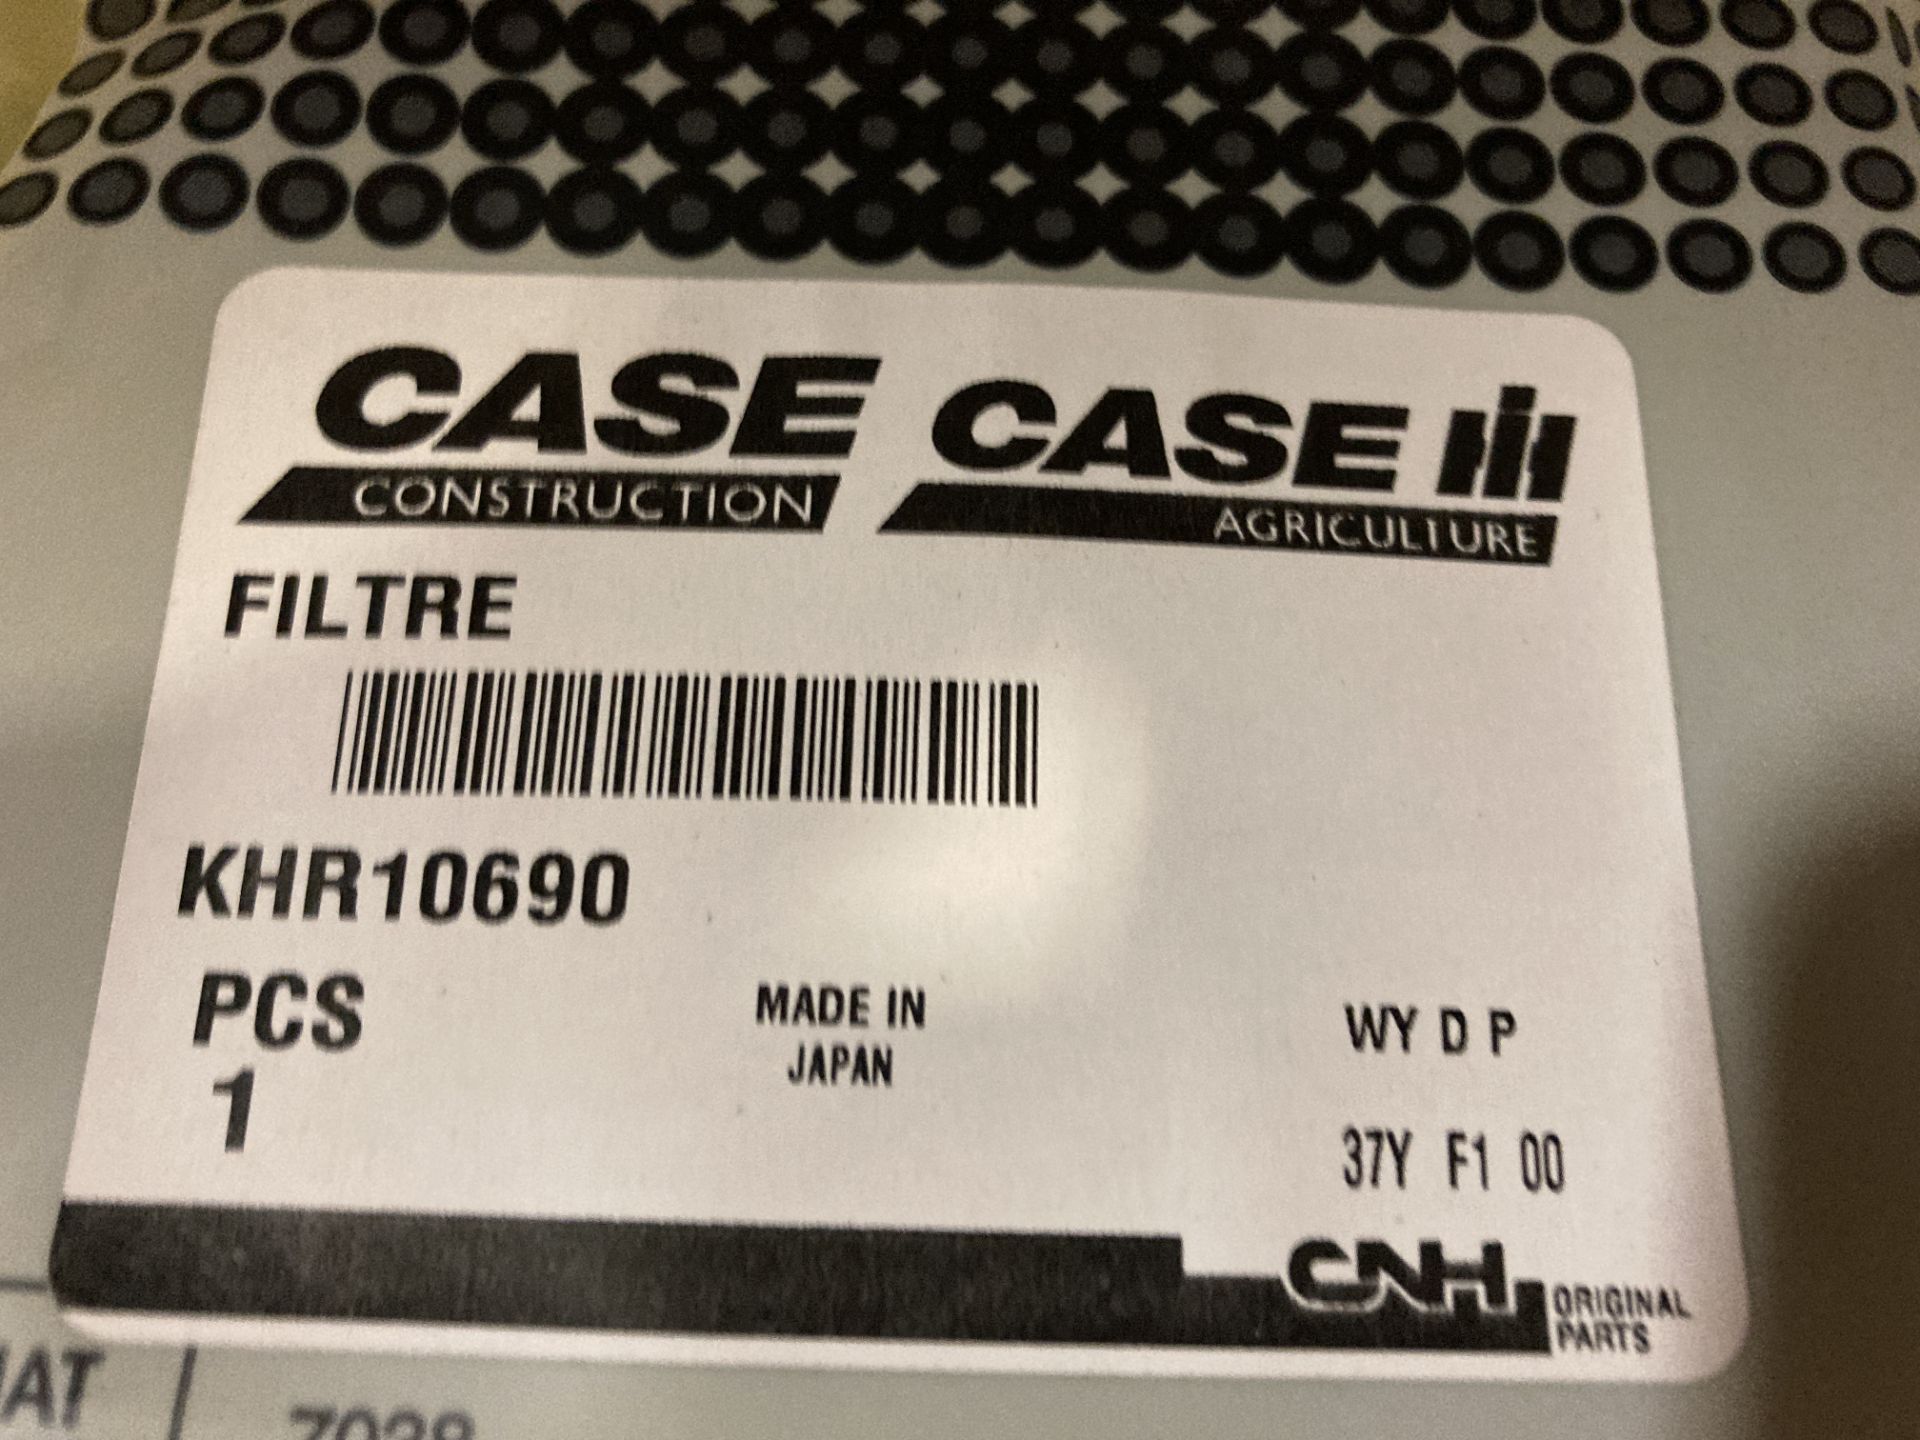 Case IH Filter - Image 2 of 3